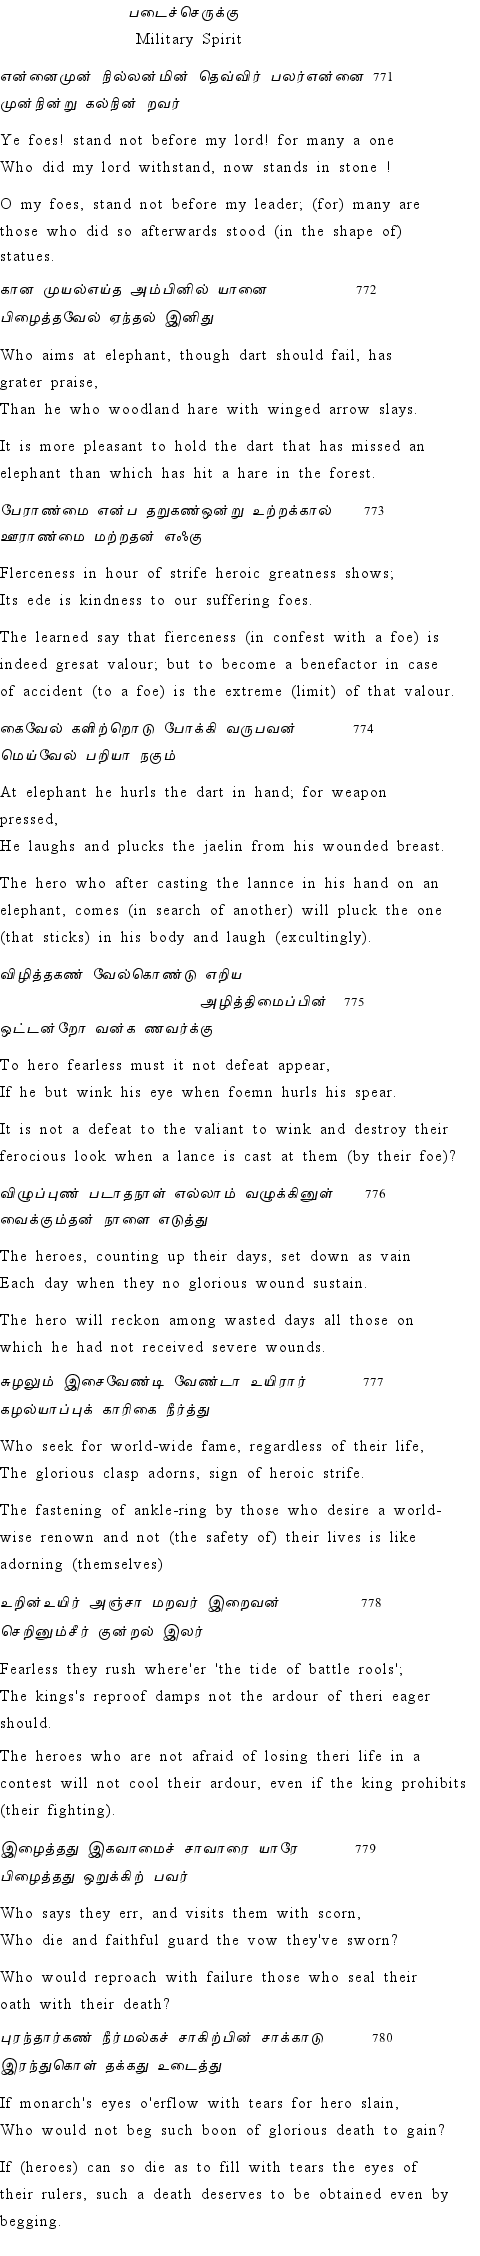 Text of Adhikaram 78